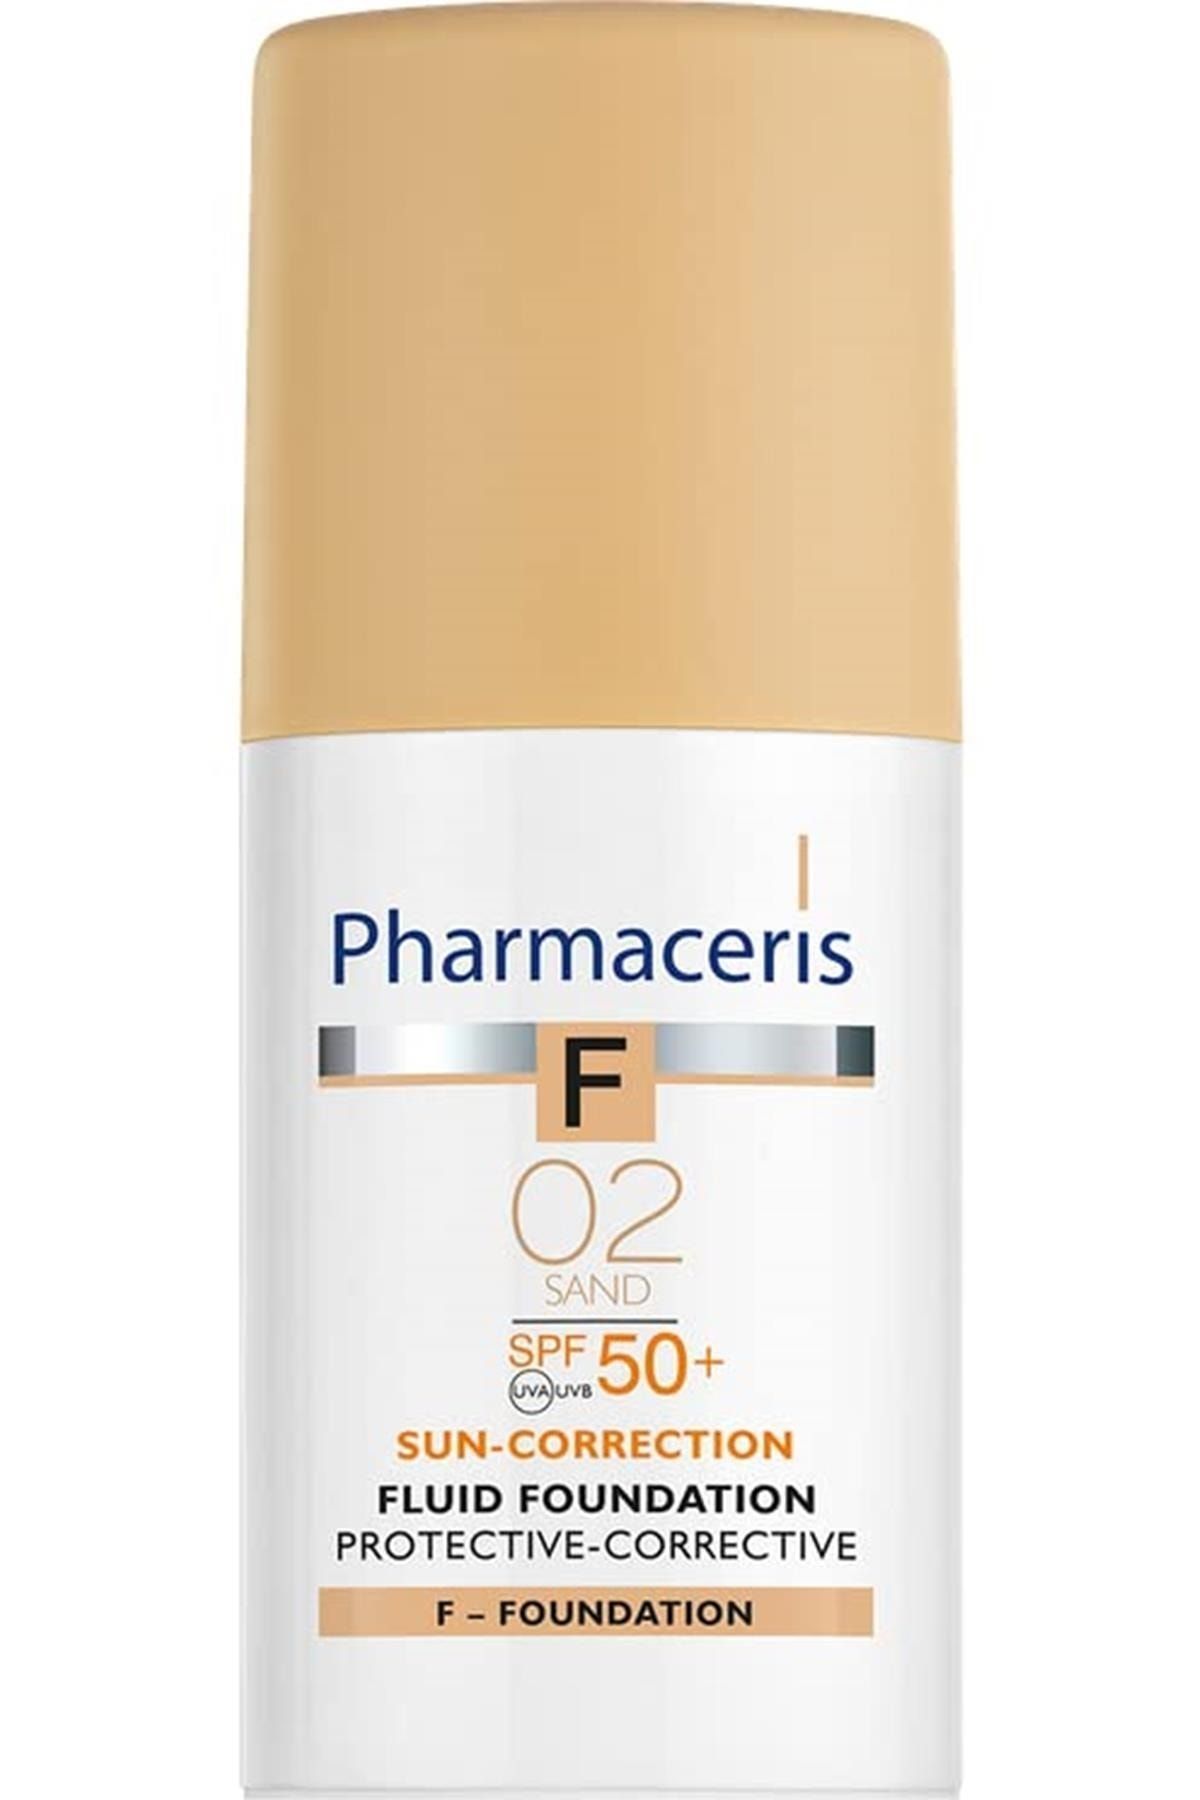 Pharmaceris S-5 Protective-corrective Fluid Foundation Spf50+ (02 Sand) (yüksek Koruma Faktörlü Kap